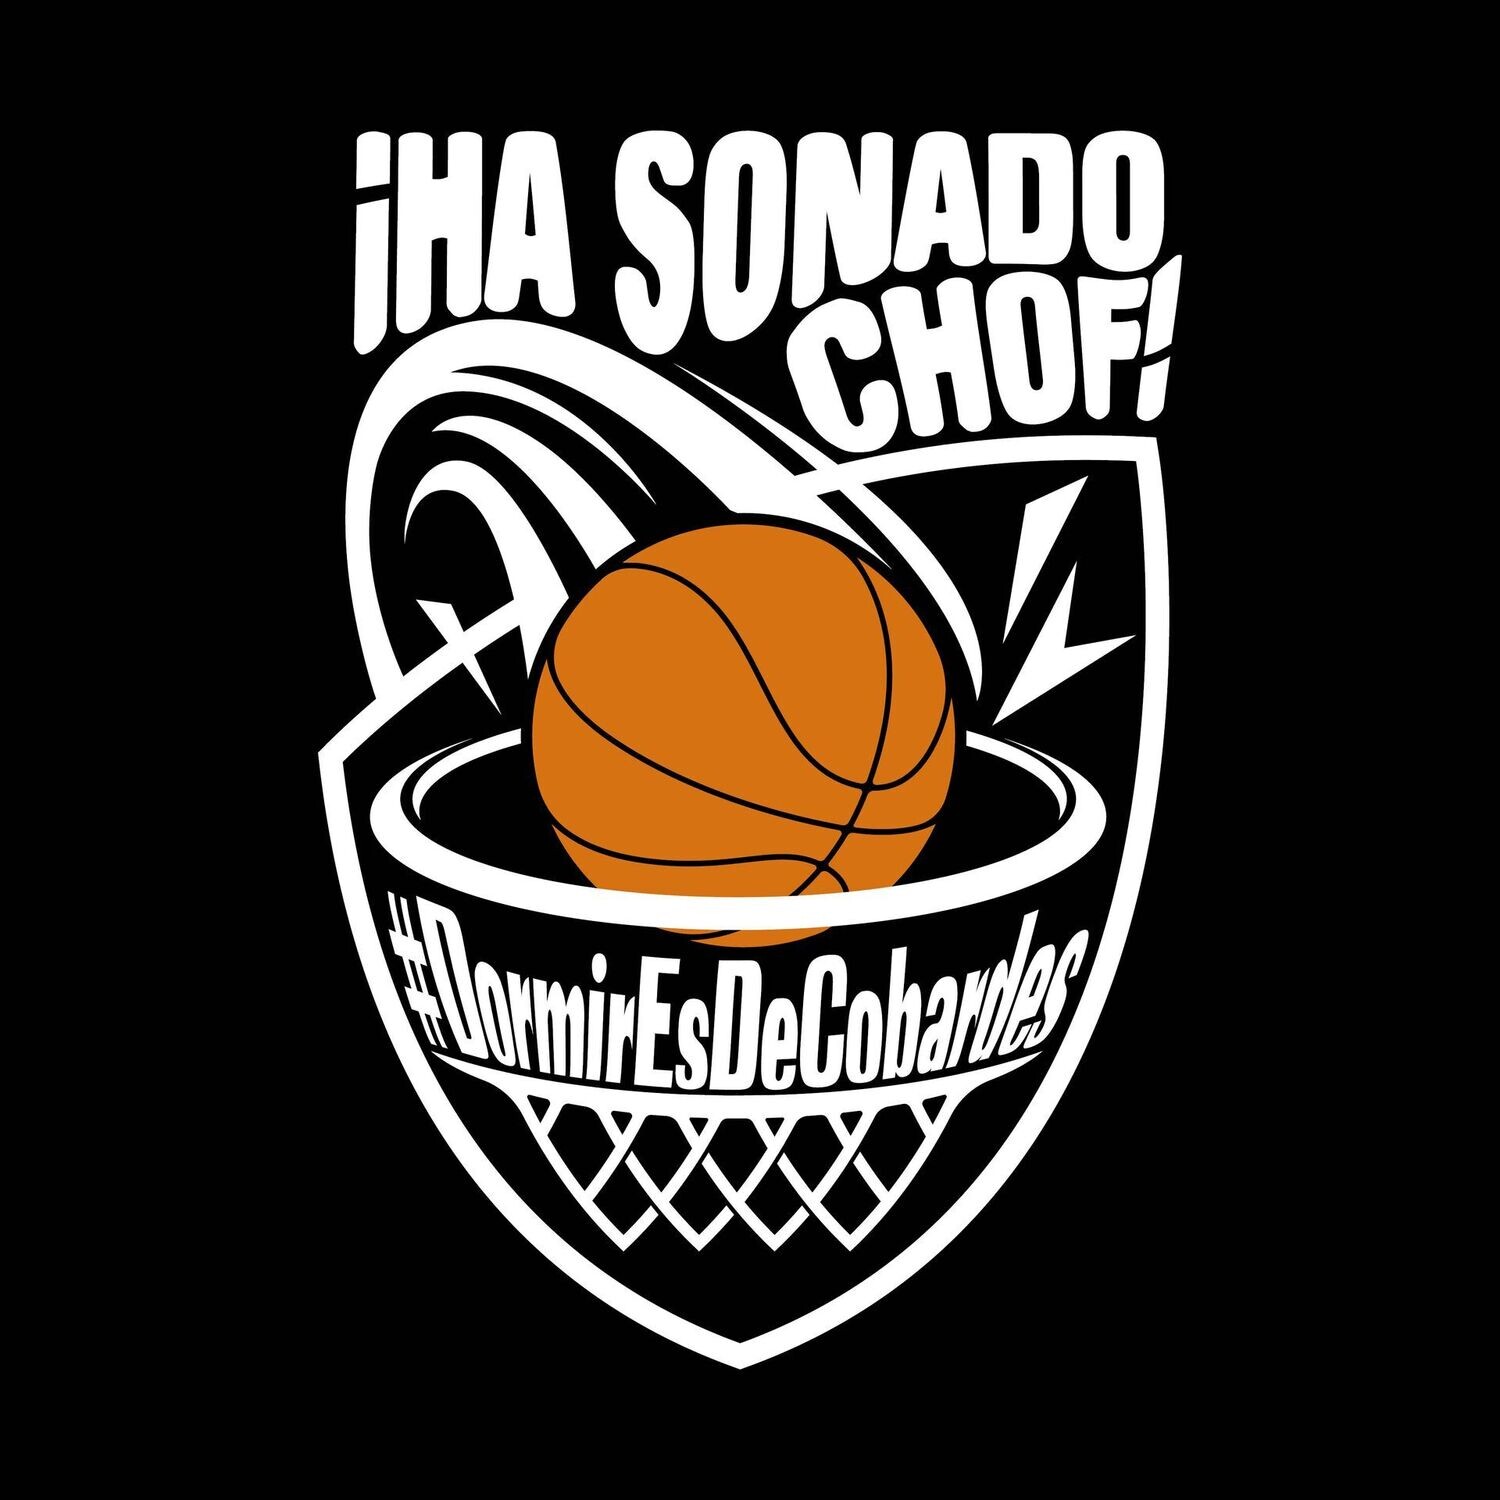 Camiseta NBA Ha Sonado Chof | Dormir Es De Cobardes